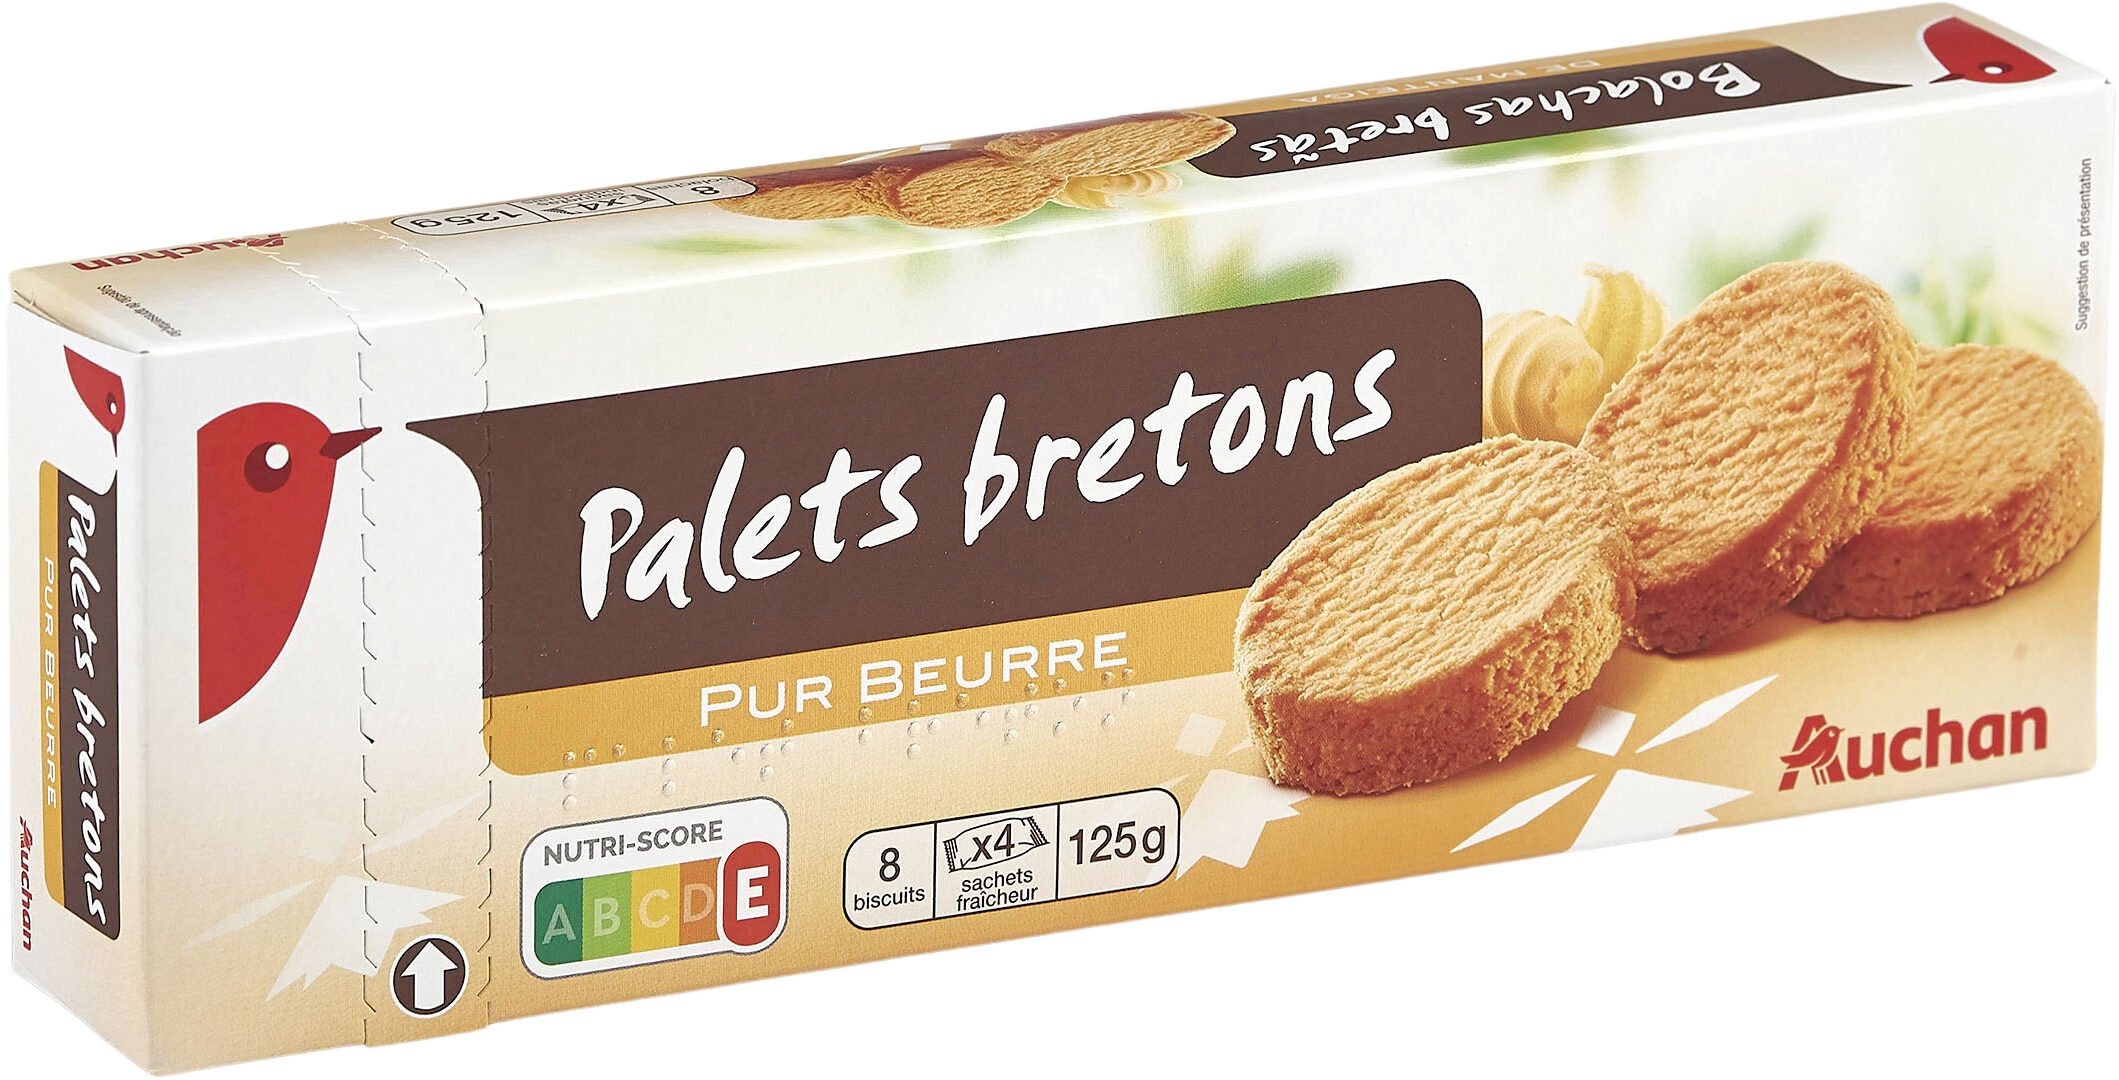 Palets bretons pur beurre - Produit